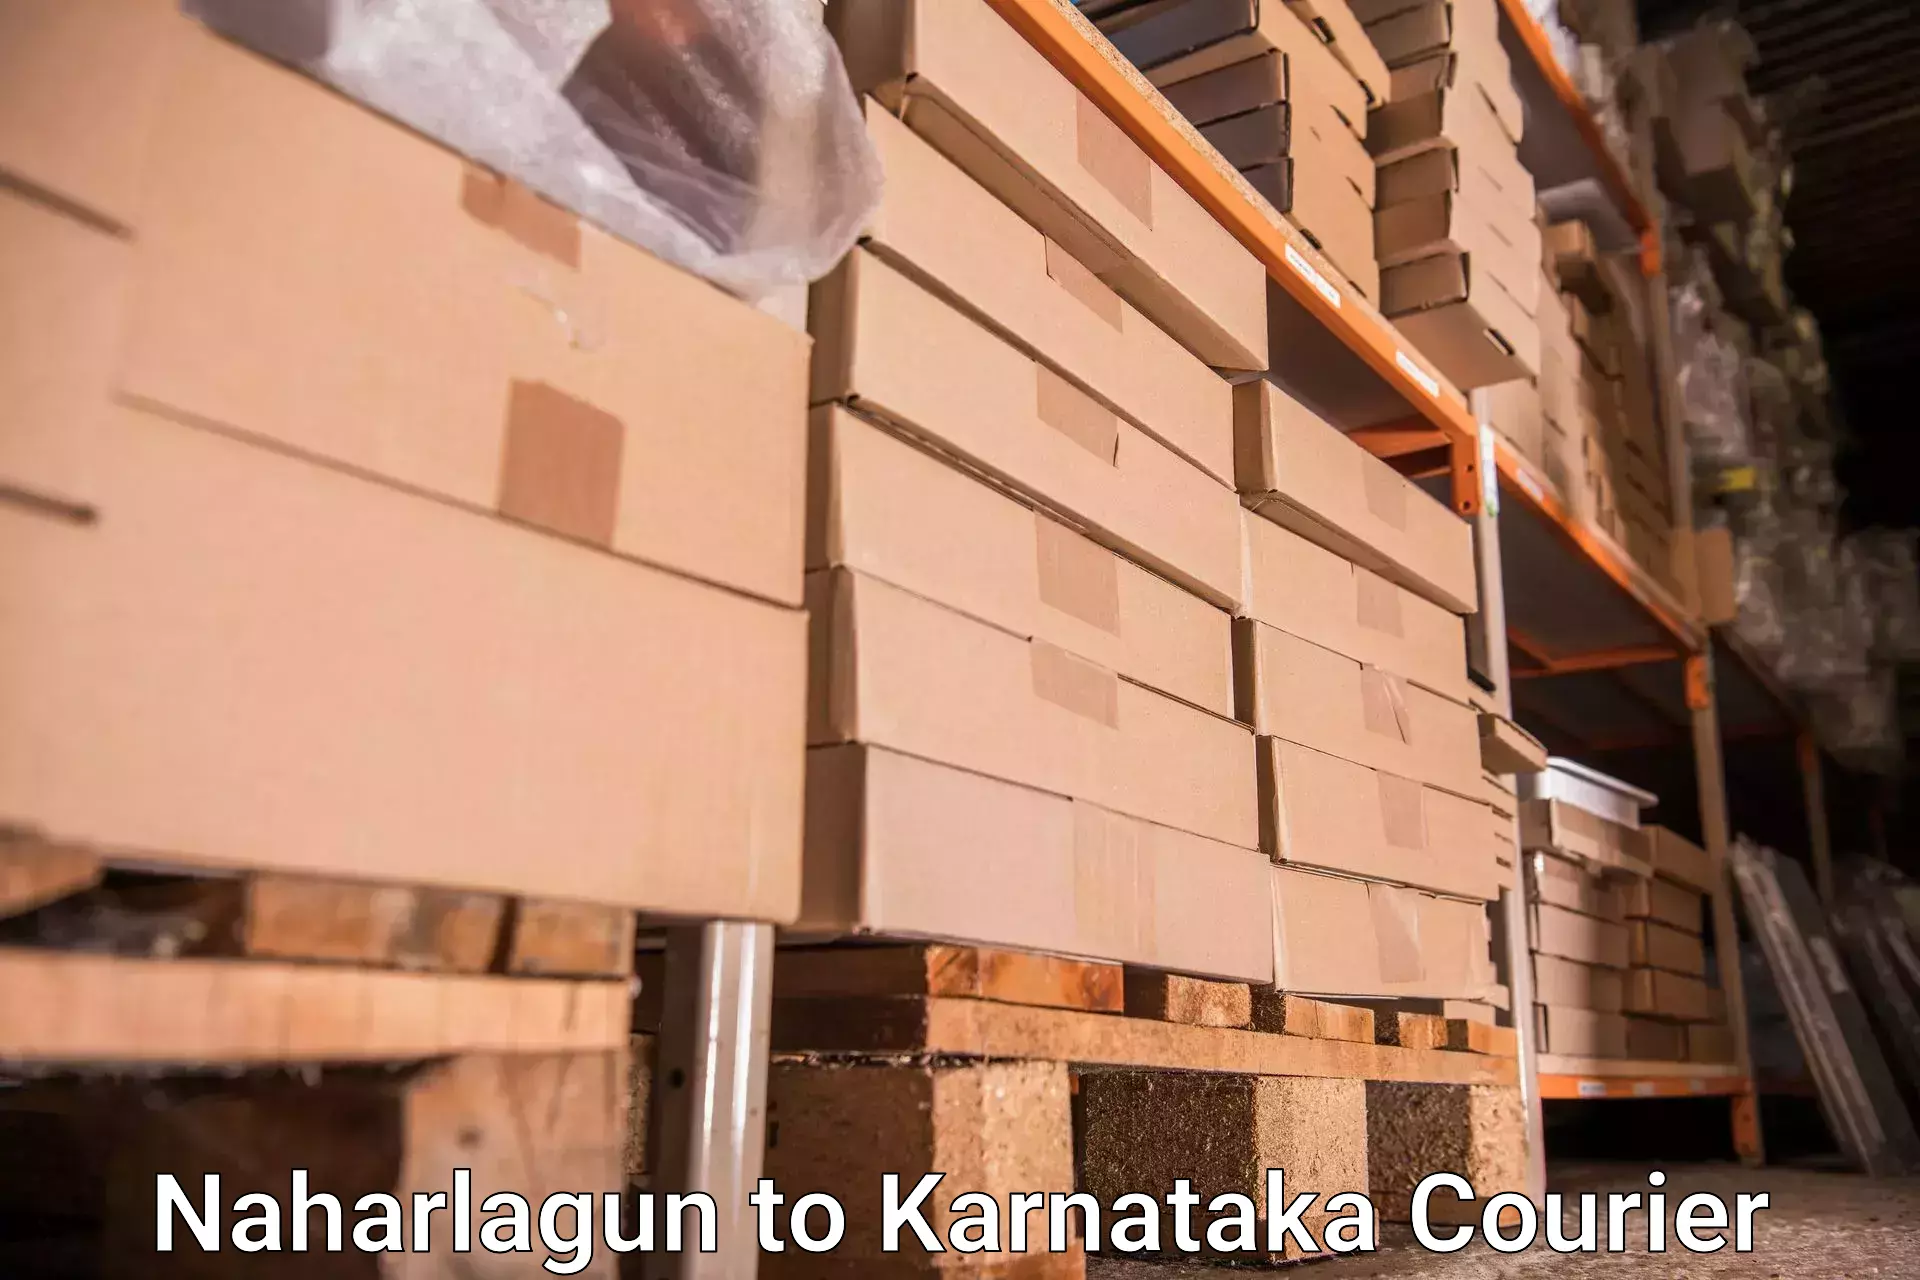 Baggage handling services Naharlagun to Kollegal